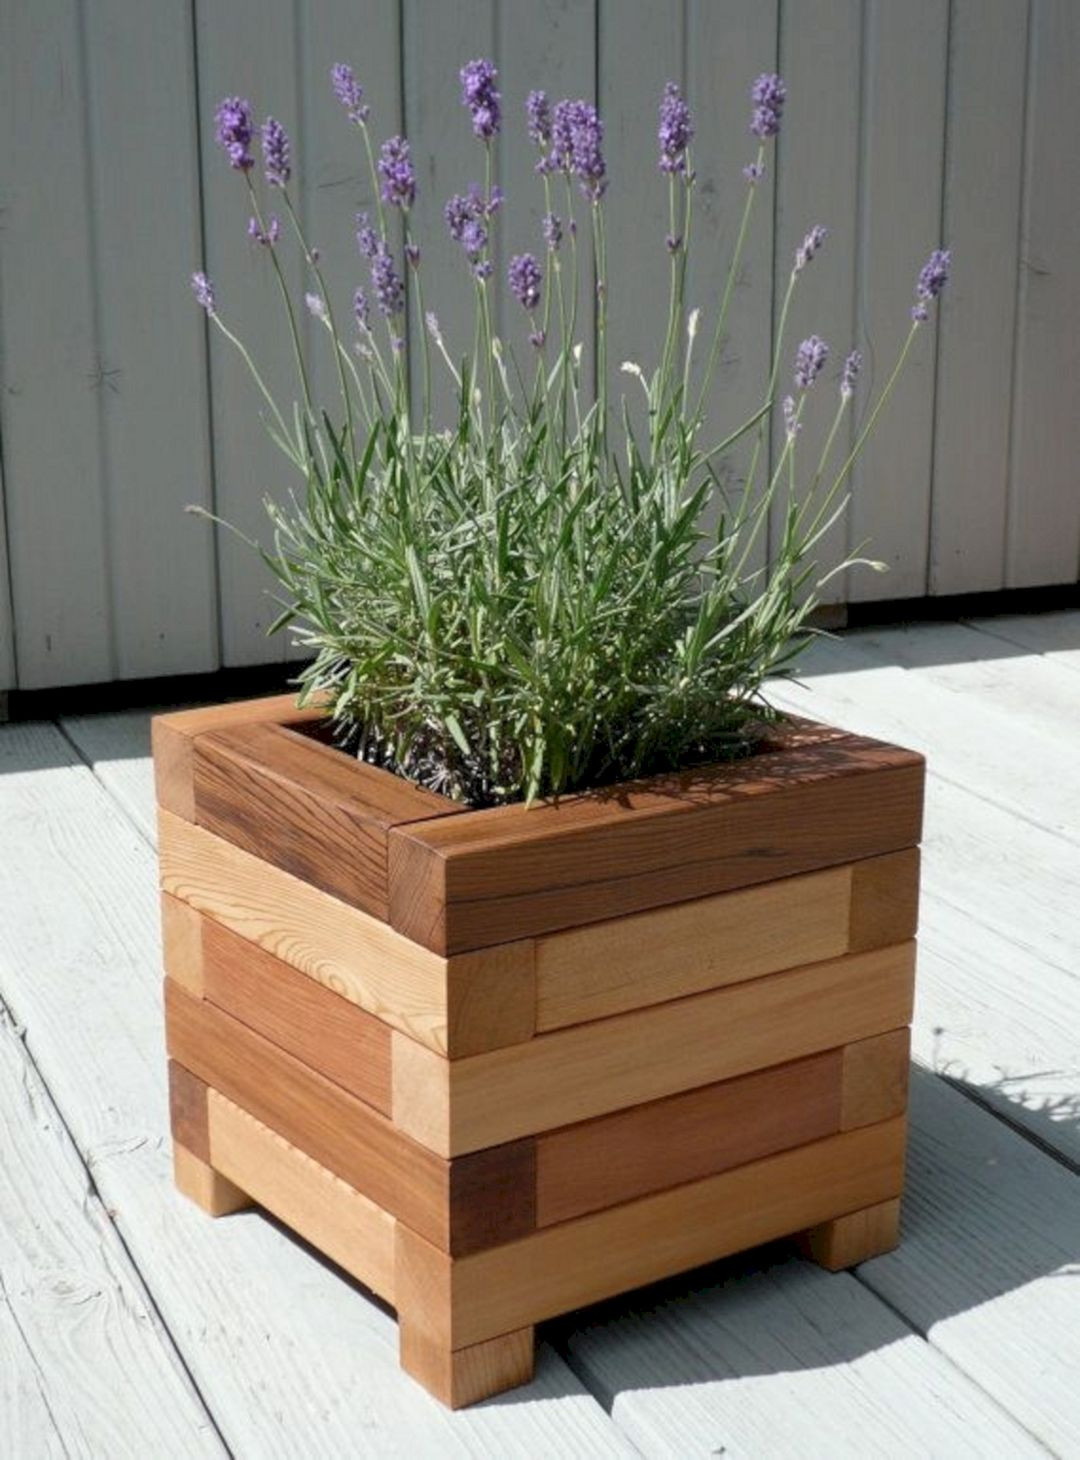 DIY Garden Planter Boxes
 DIY Wooden Planter Box Ideas 1 DIY Wooden Planter Box